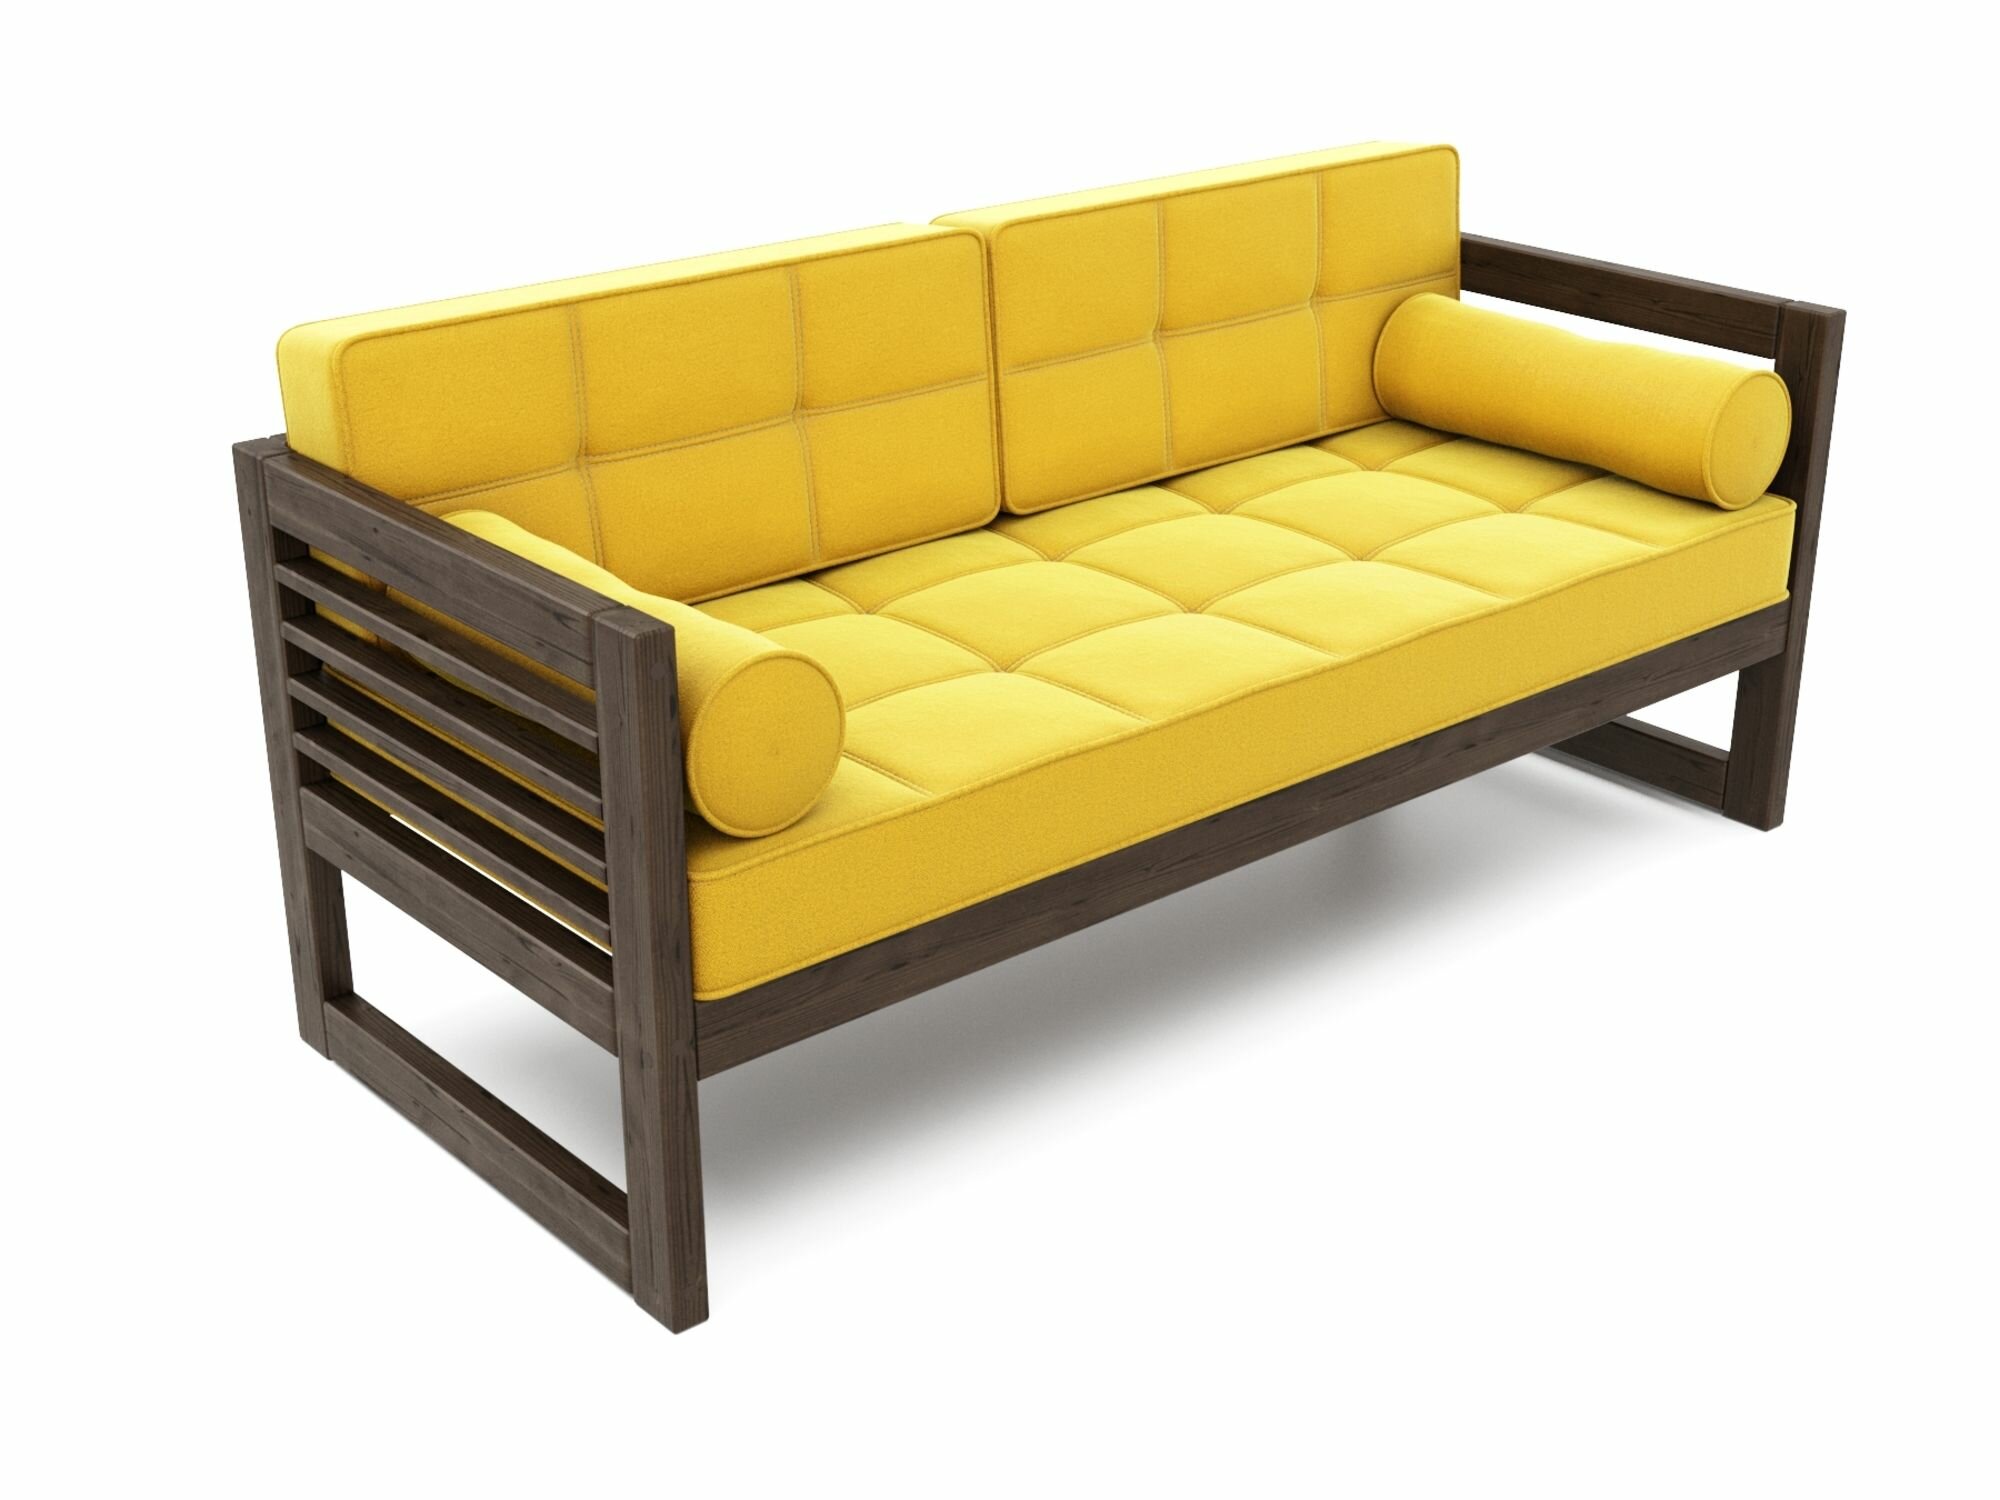 Прямой диван СЕГА-Б-С, желтый-венге, велюр, массив дерева, офисный, садовый, для кафе и бара, в гостиную, скандинавский лофт